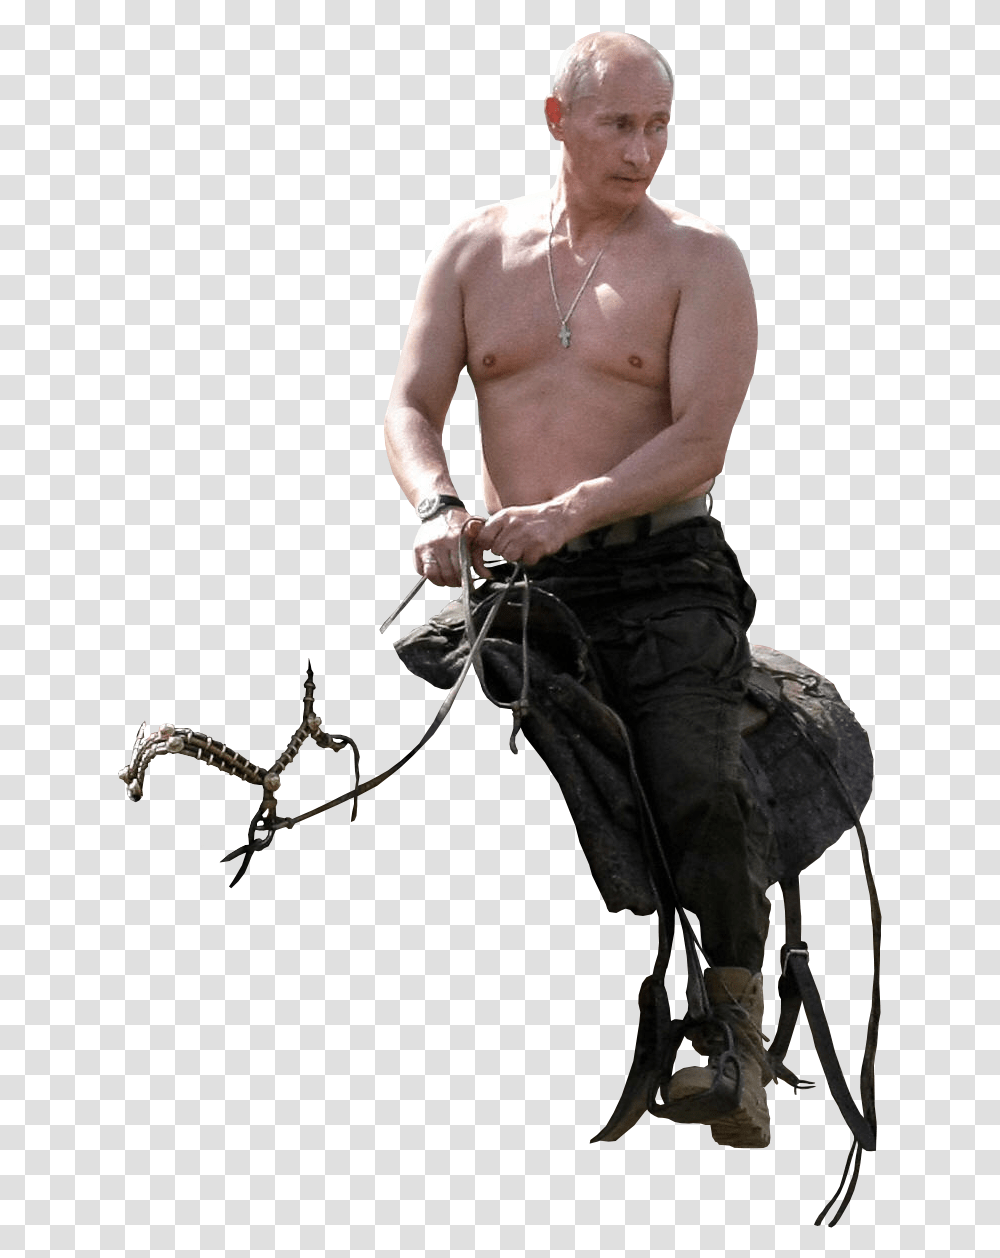 Putin Putin Riding Horse, Person, Human, Skin Transparent Png